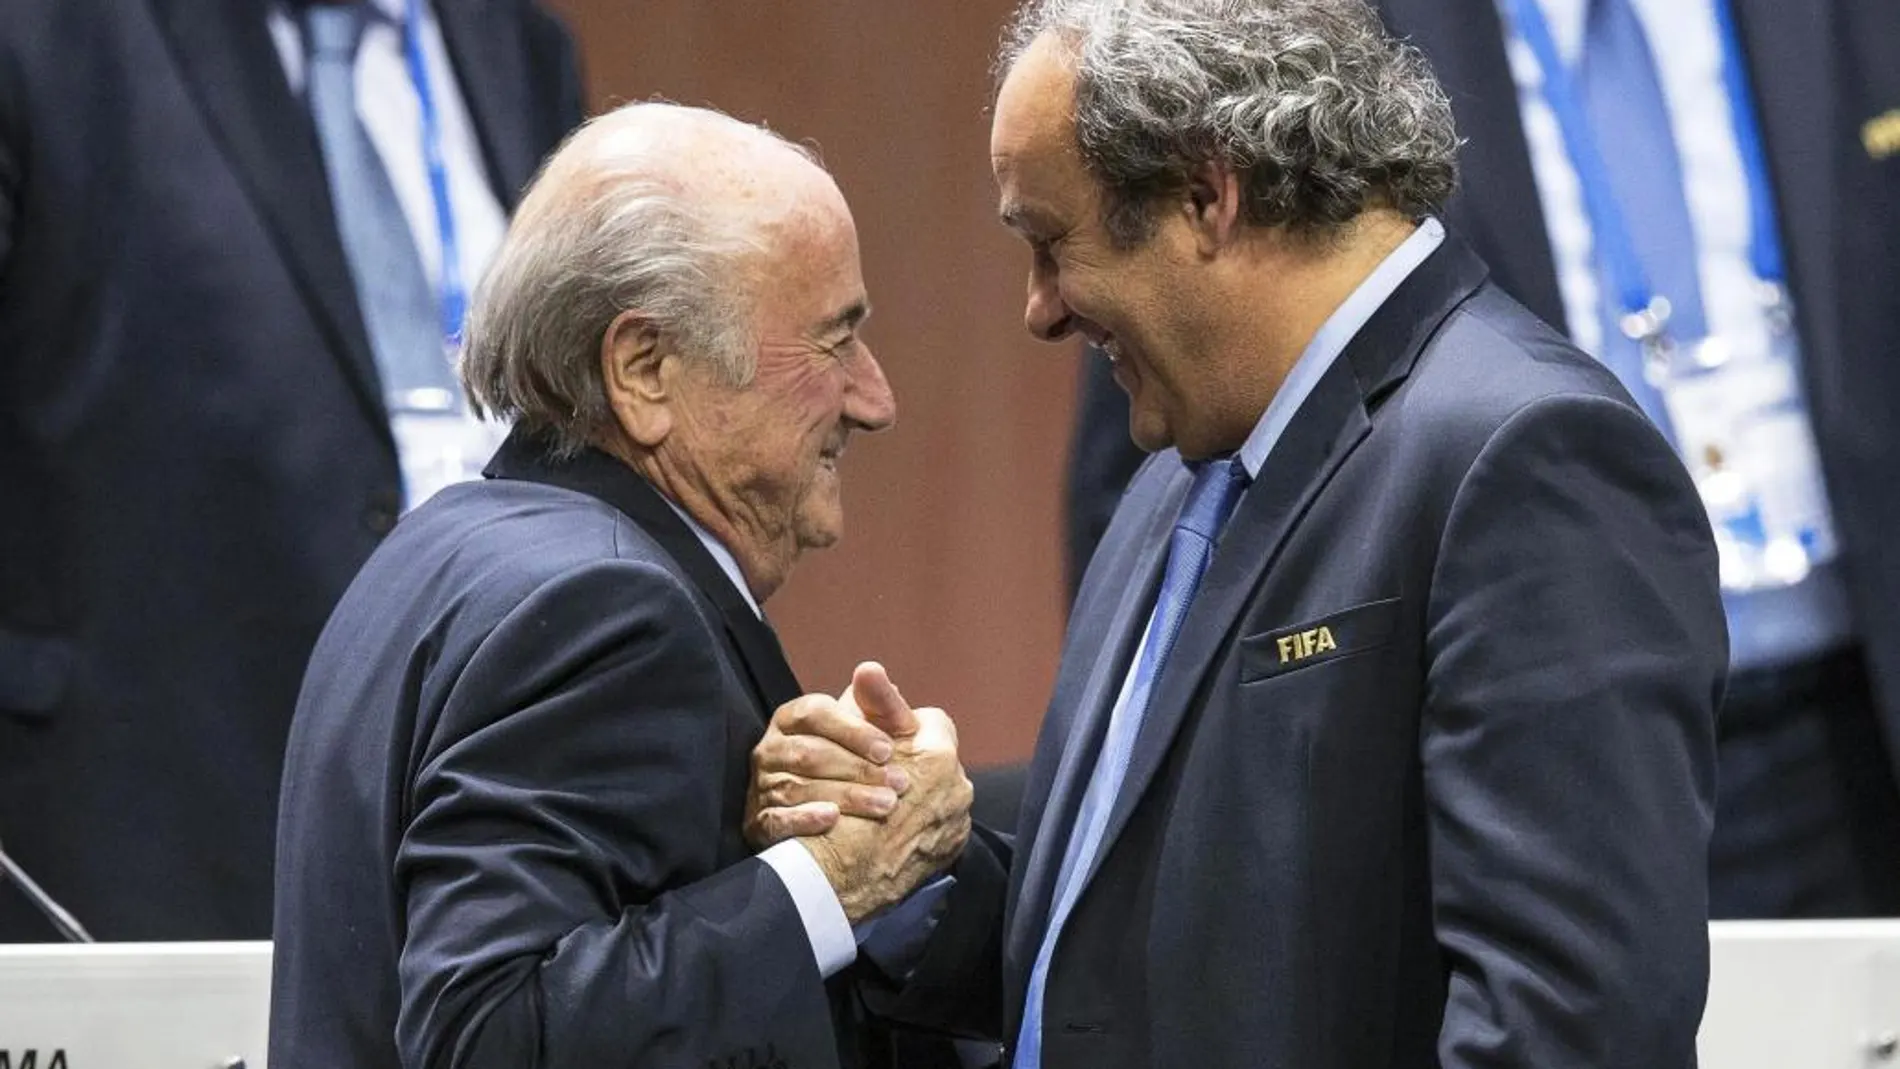 Fotografía de archivo fechada el 29 de mayo de 2015 que muestra al presidente de la FIFA, Joseph Blatter (i), junto al presidente de la UEFA, Michel Platini (d)